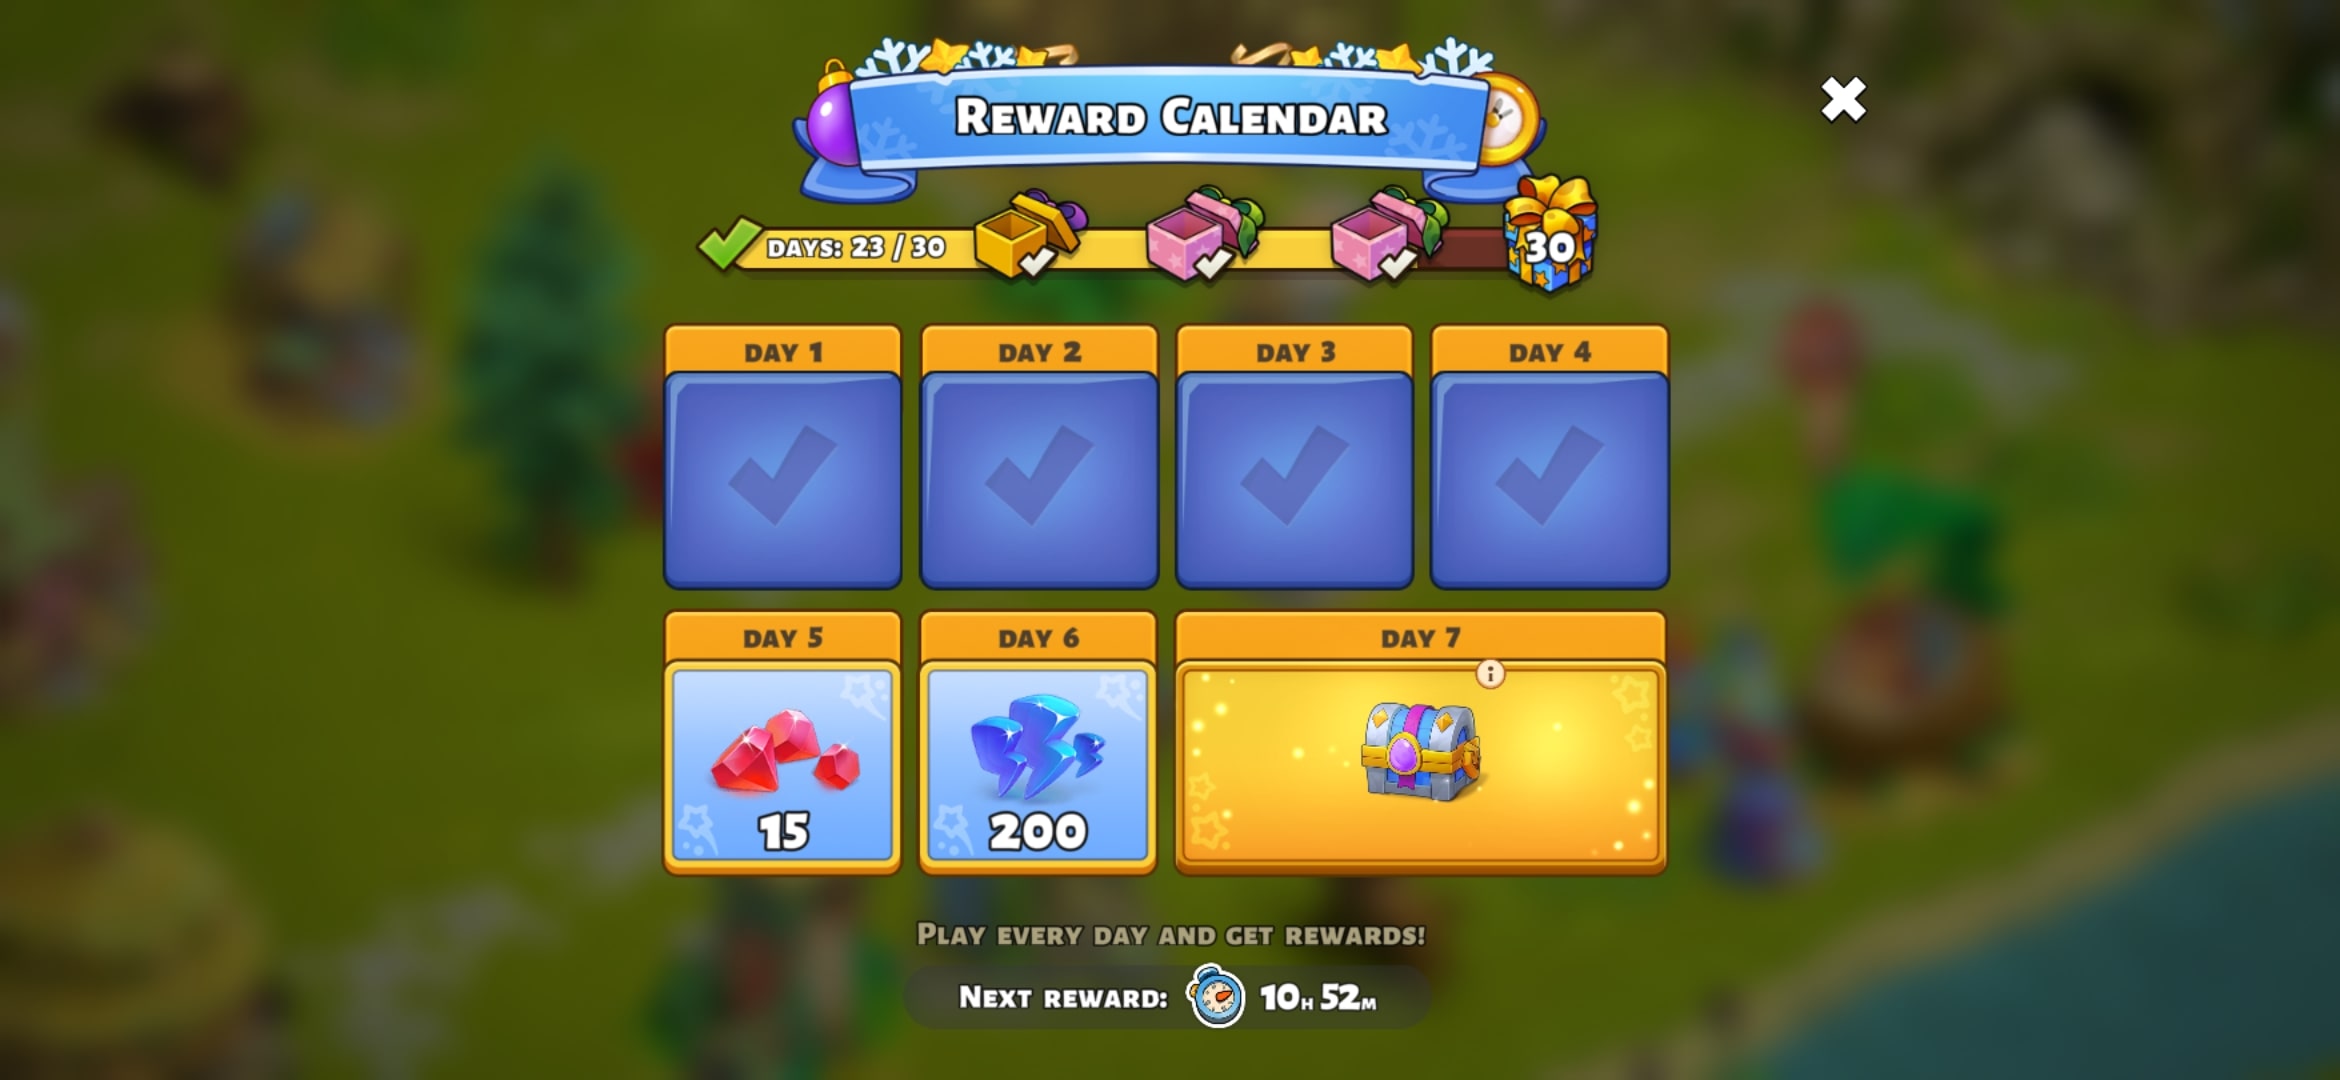 Daily Reward Calendar